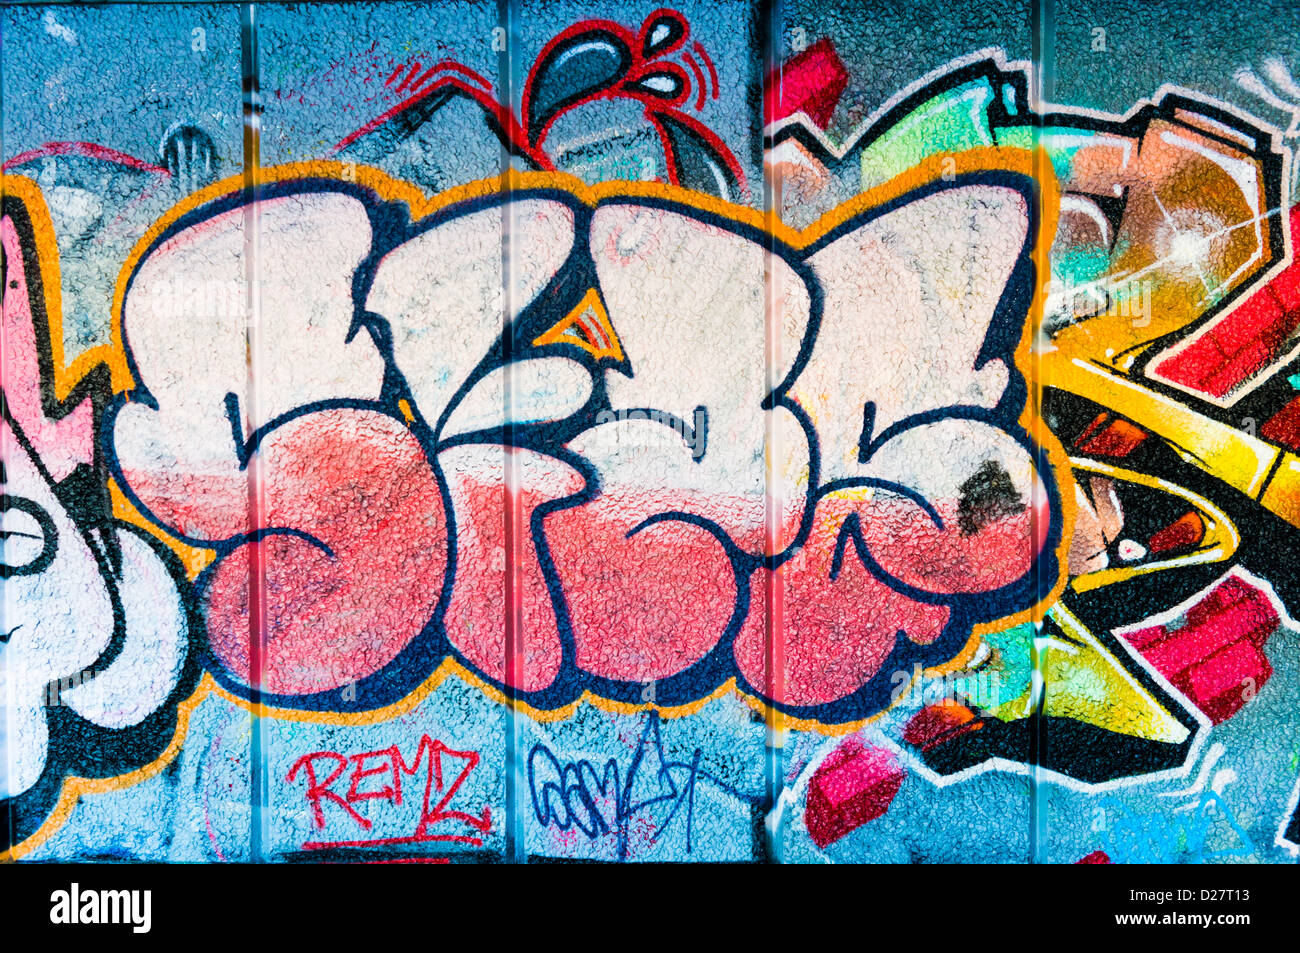 Street art graffiti tag sur un mur, UK Banque D'Images